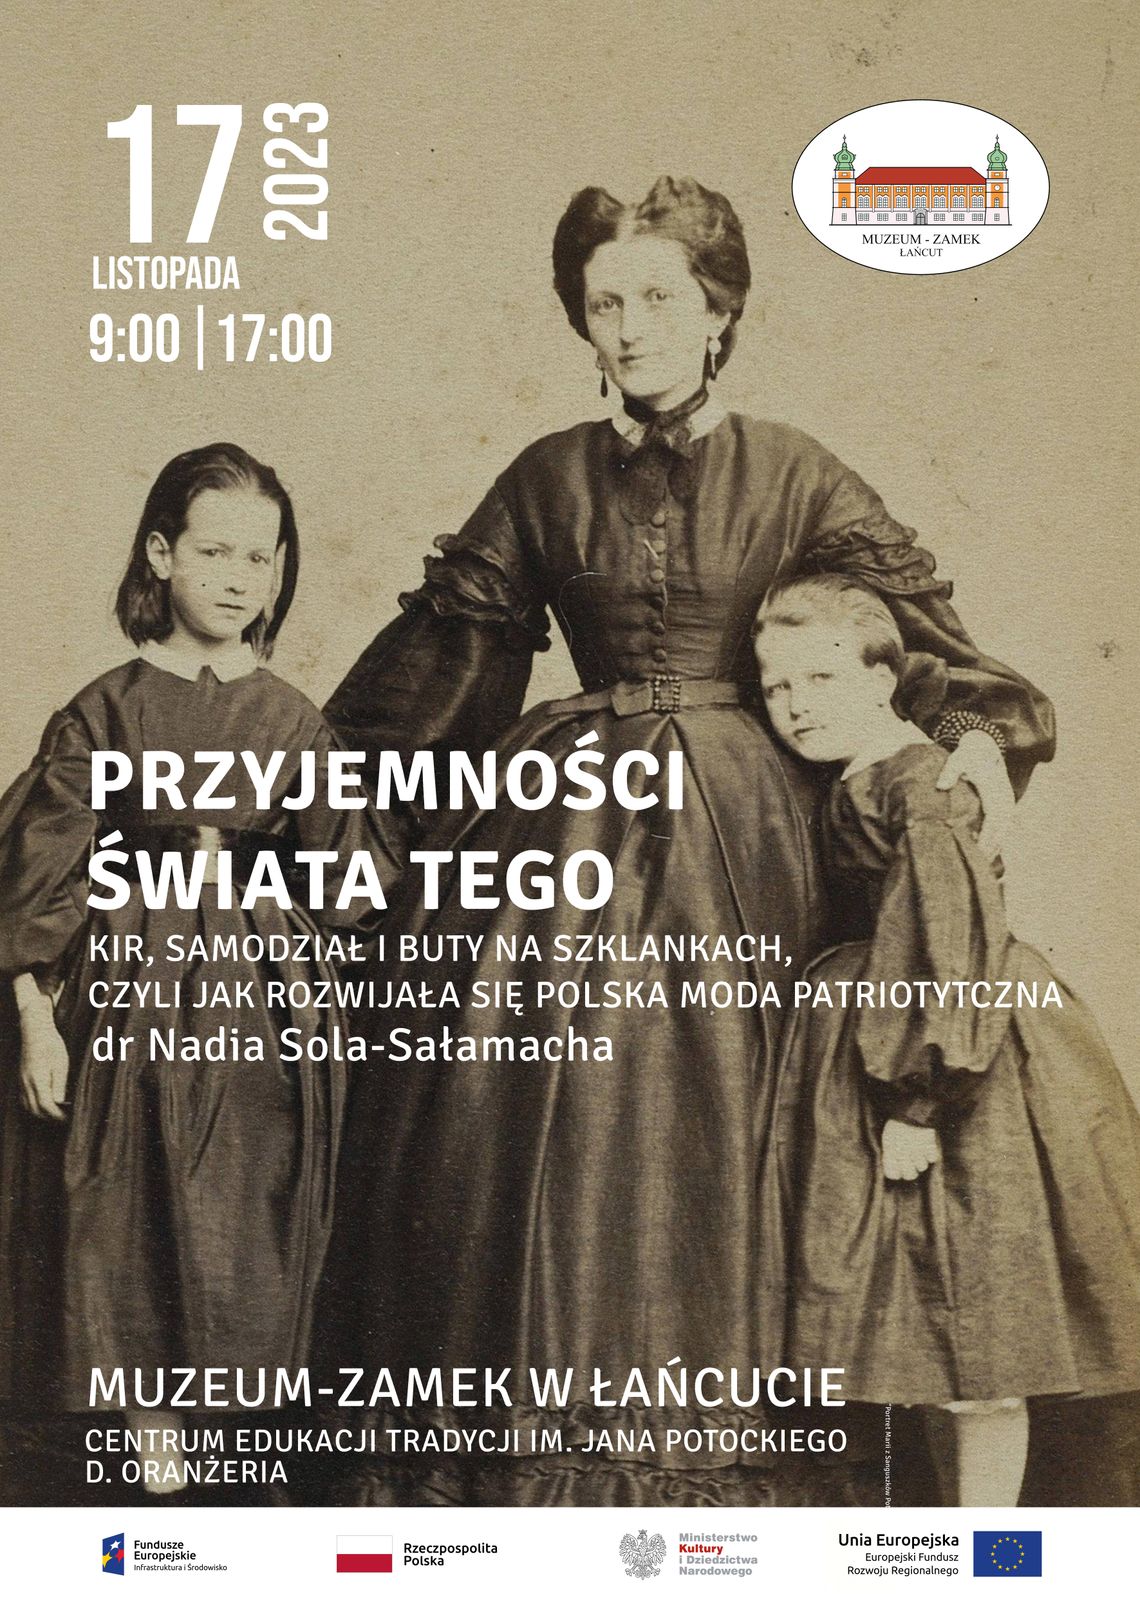 Polska moda patriotyczna - wykłady w Muzeum-Zamku w Łańcucie